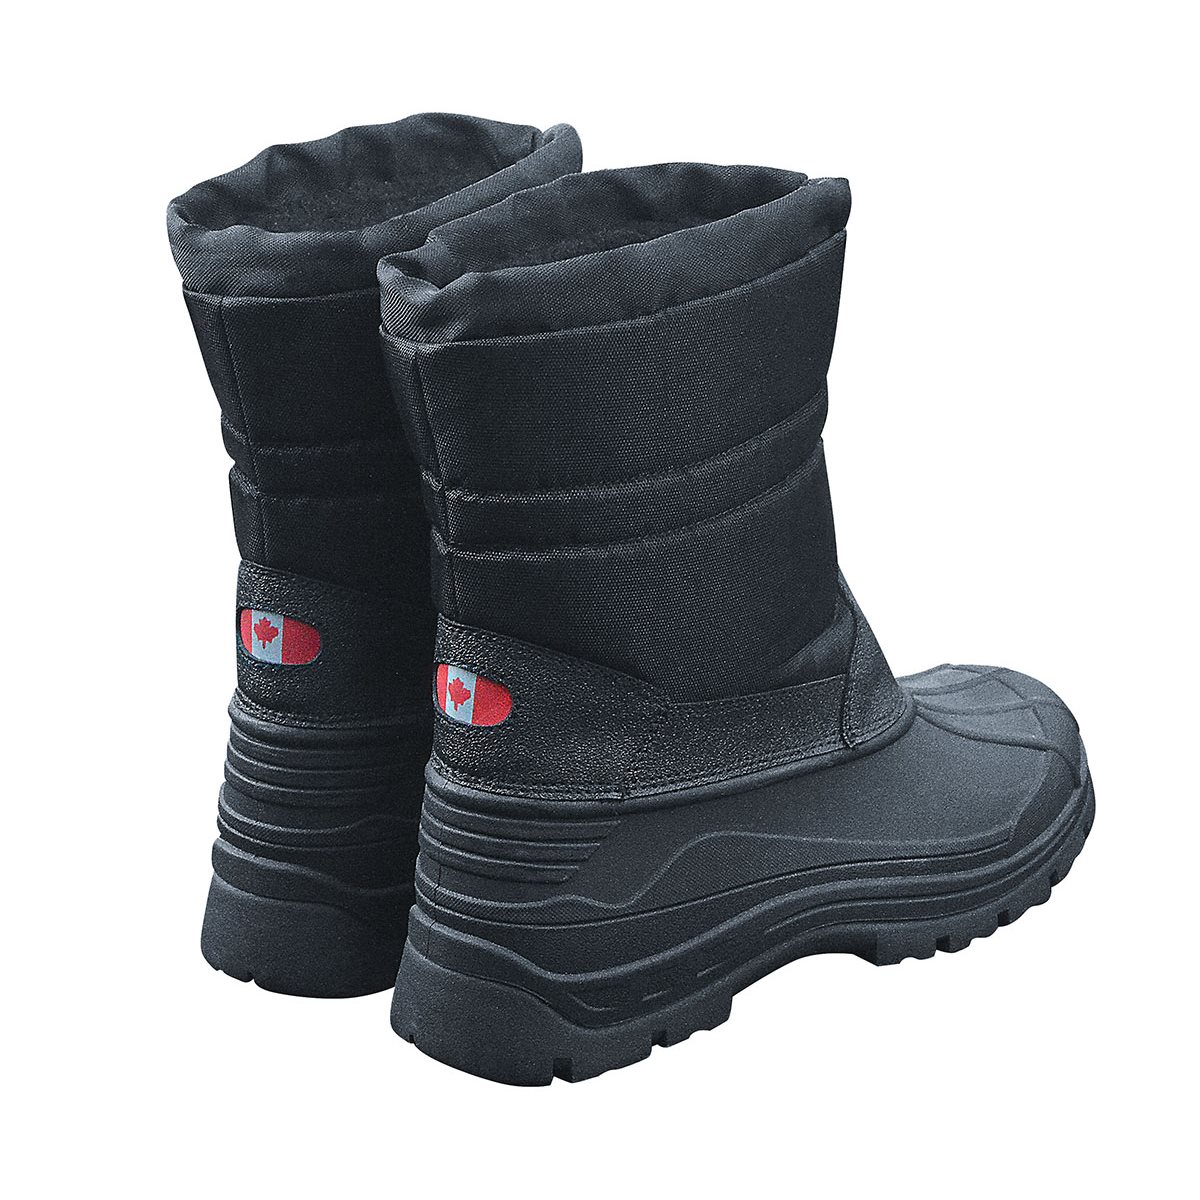 Topánky zimné CANADIAN s kožúškom ČIERNE  887 L-11